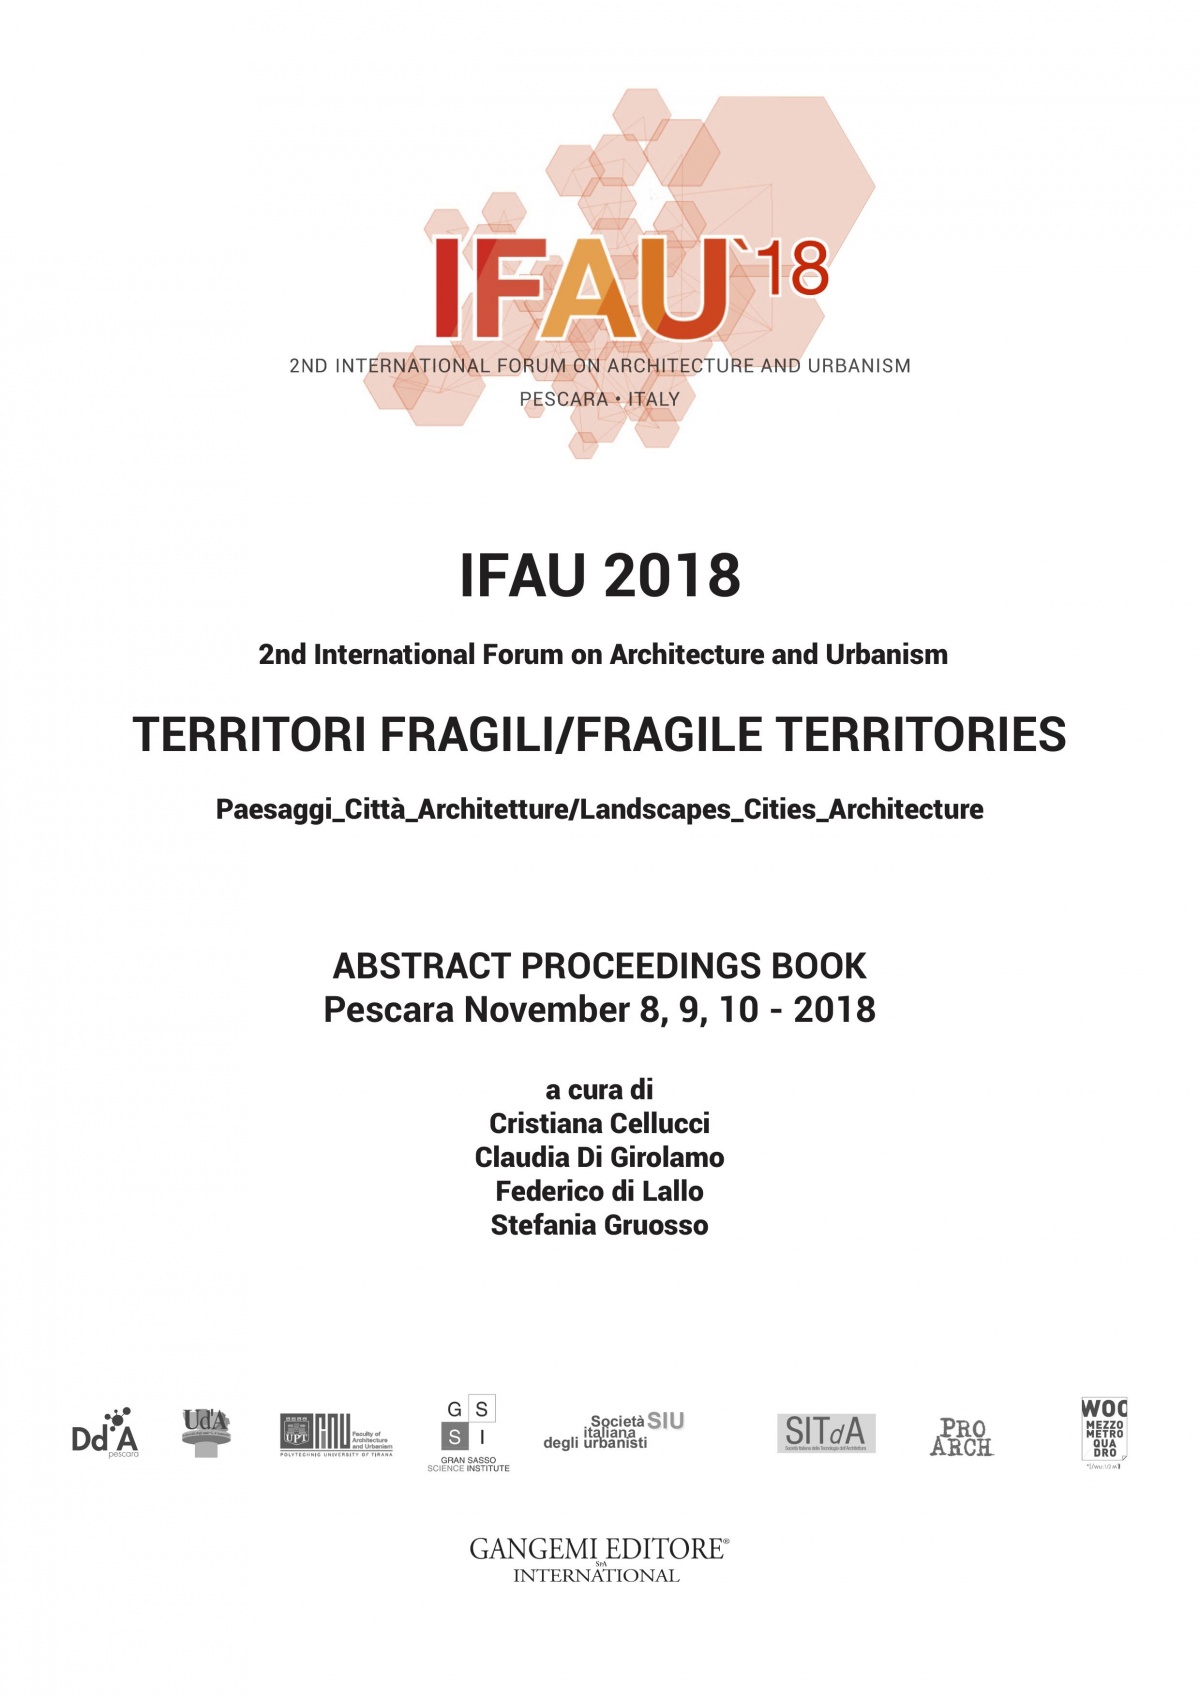 ifau territori fragili pescara forum internazionale architettura ambiente paolo posarelli